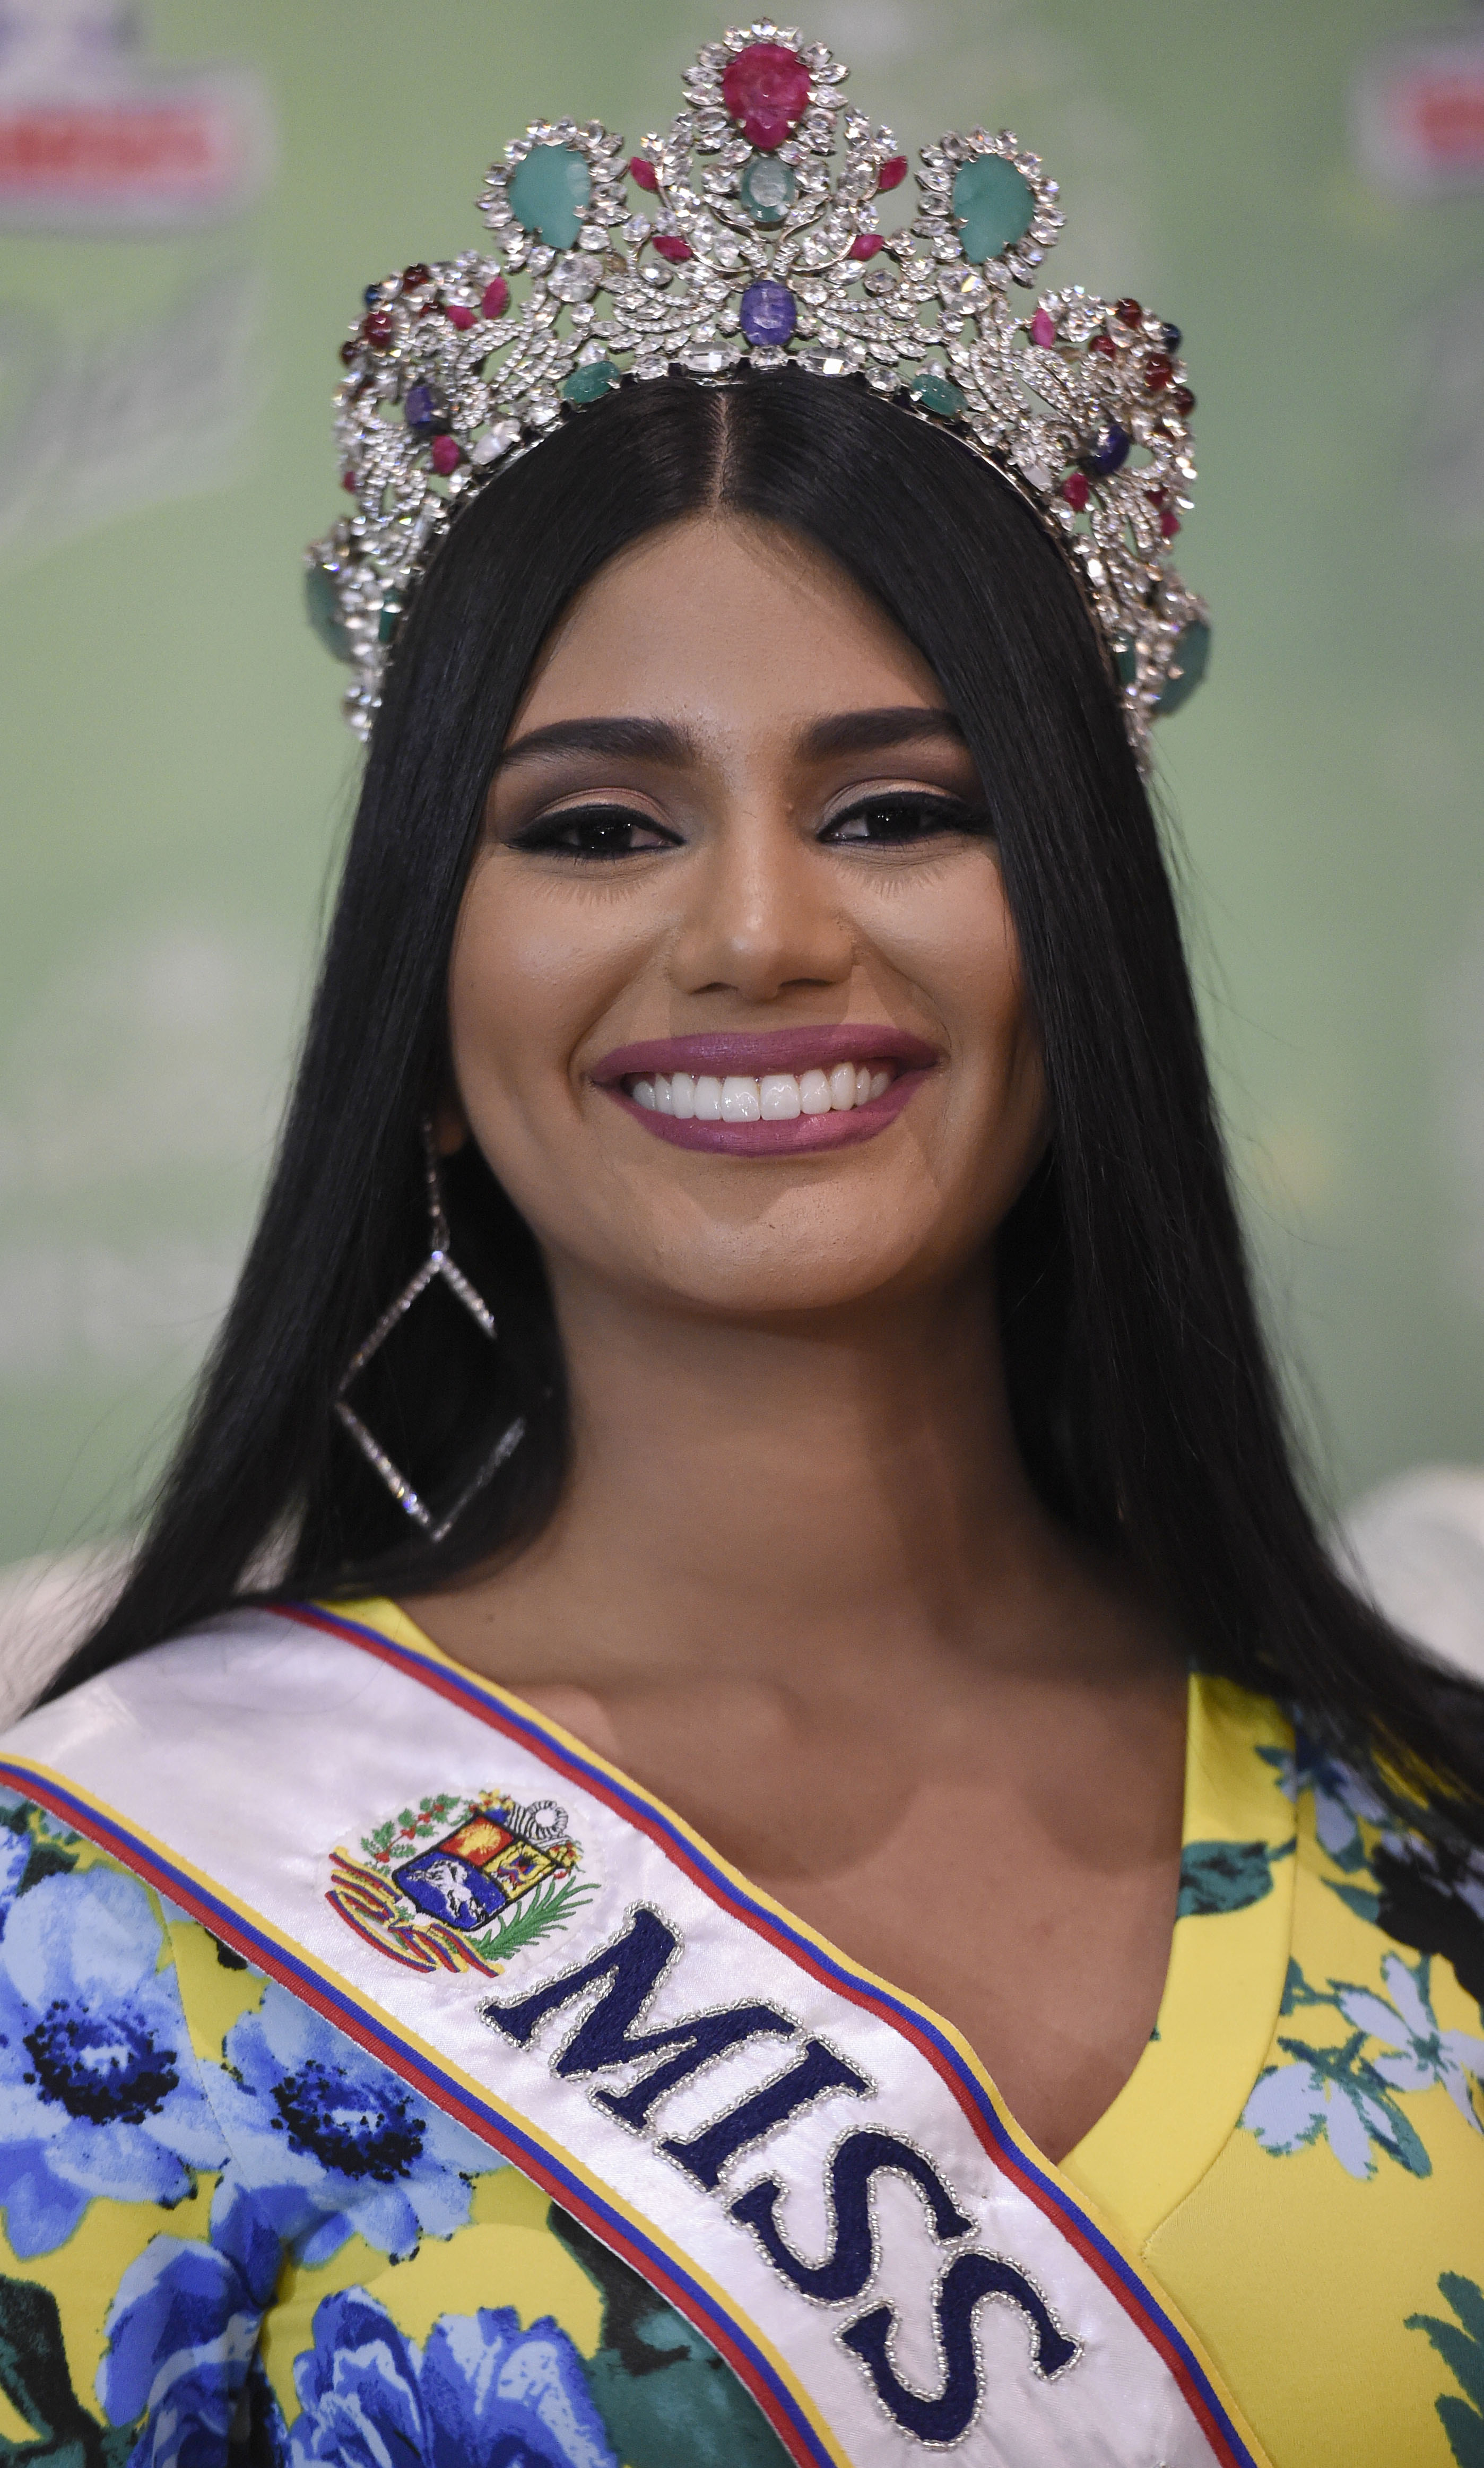 Exponen en Instagram a Miss Venezuela, finalista de Miss Universo 2018